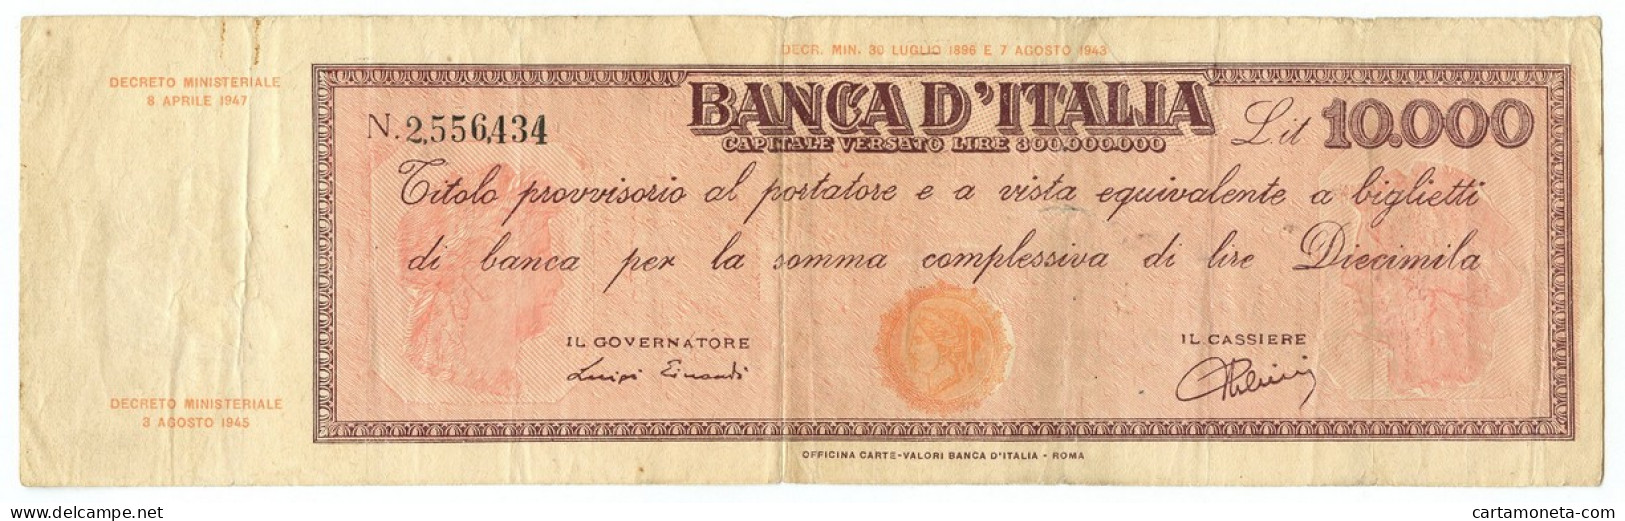 10000 LIRE FALSO D'EPOCA TITOLO PROVVISORIO TESTINA REPUBBLICA IT 08/04/1947 QBB - [ 8] Fakes & Specimens